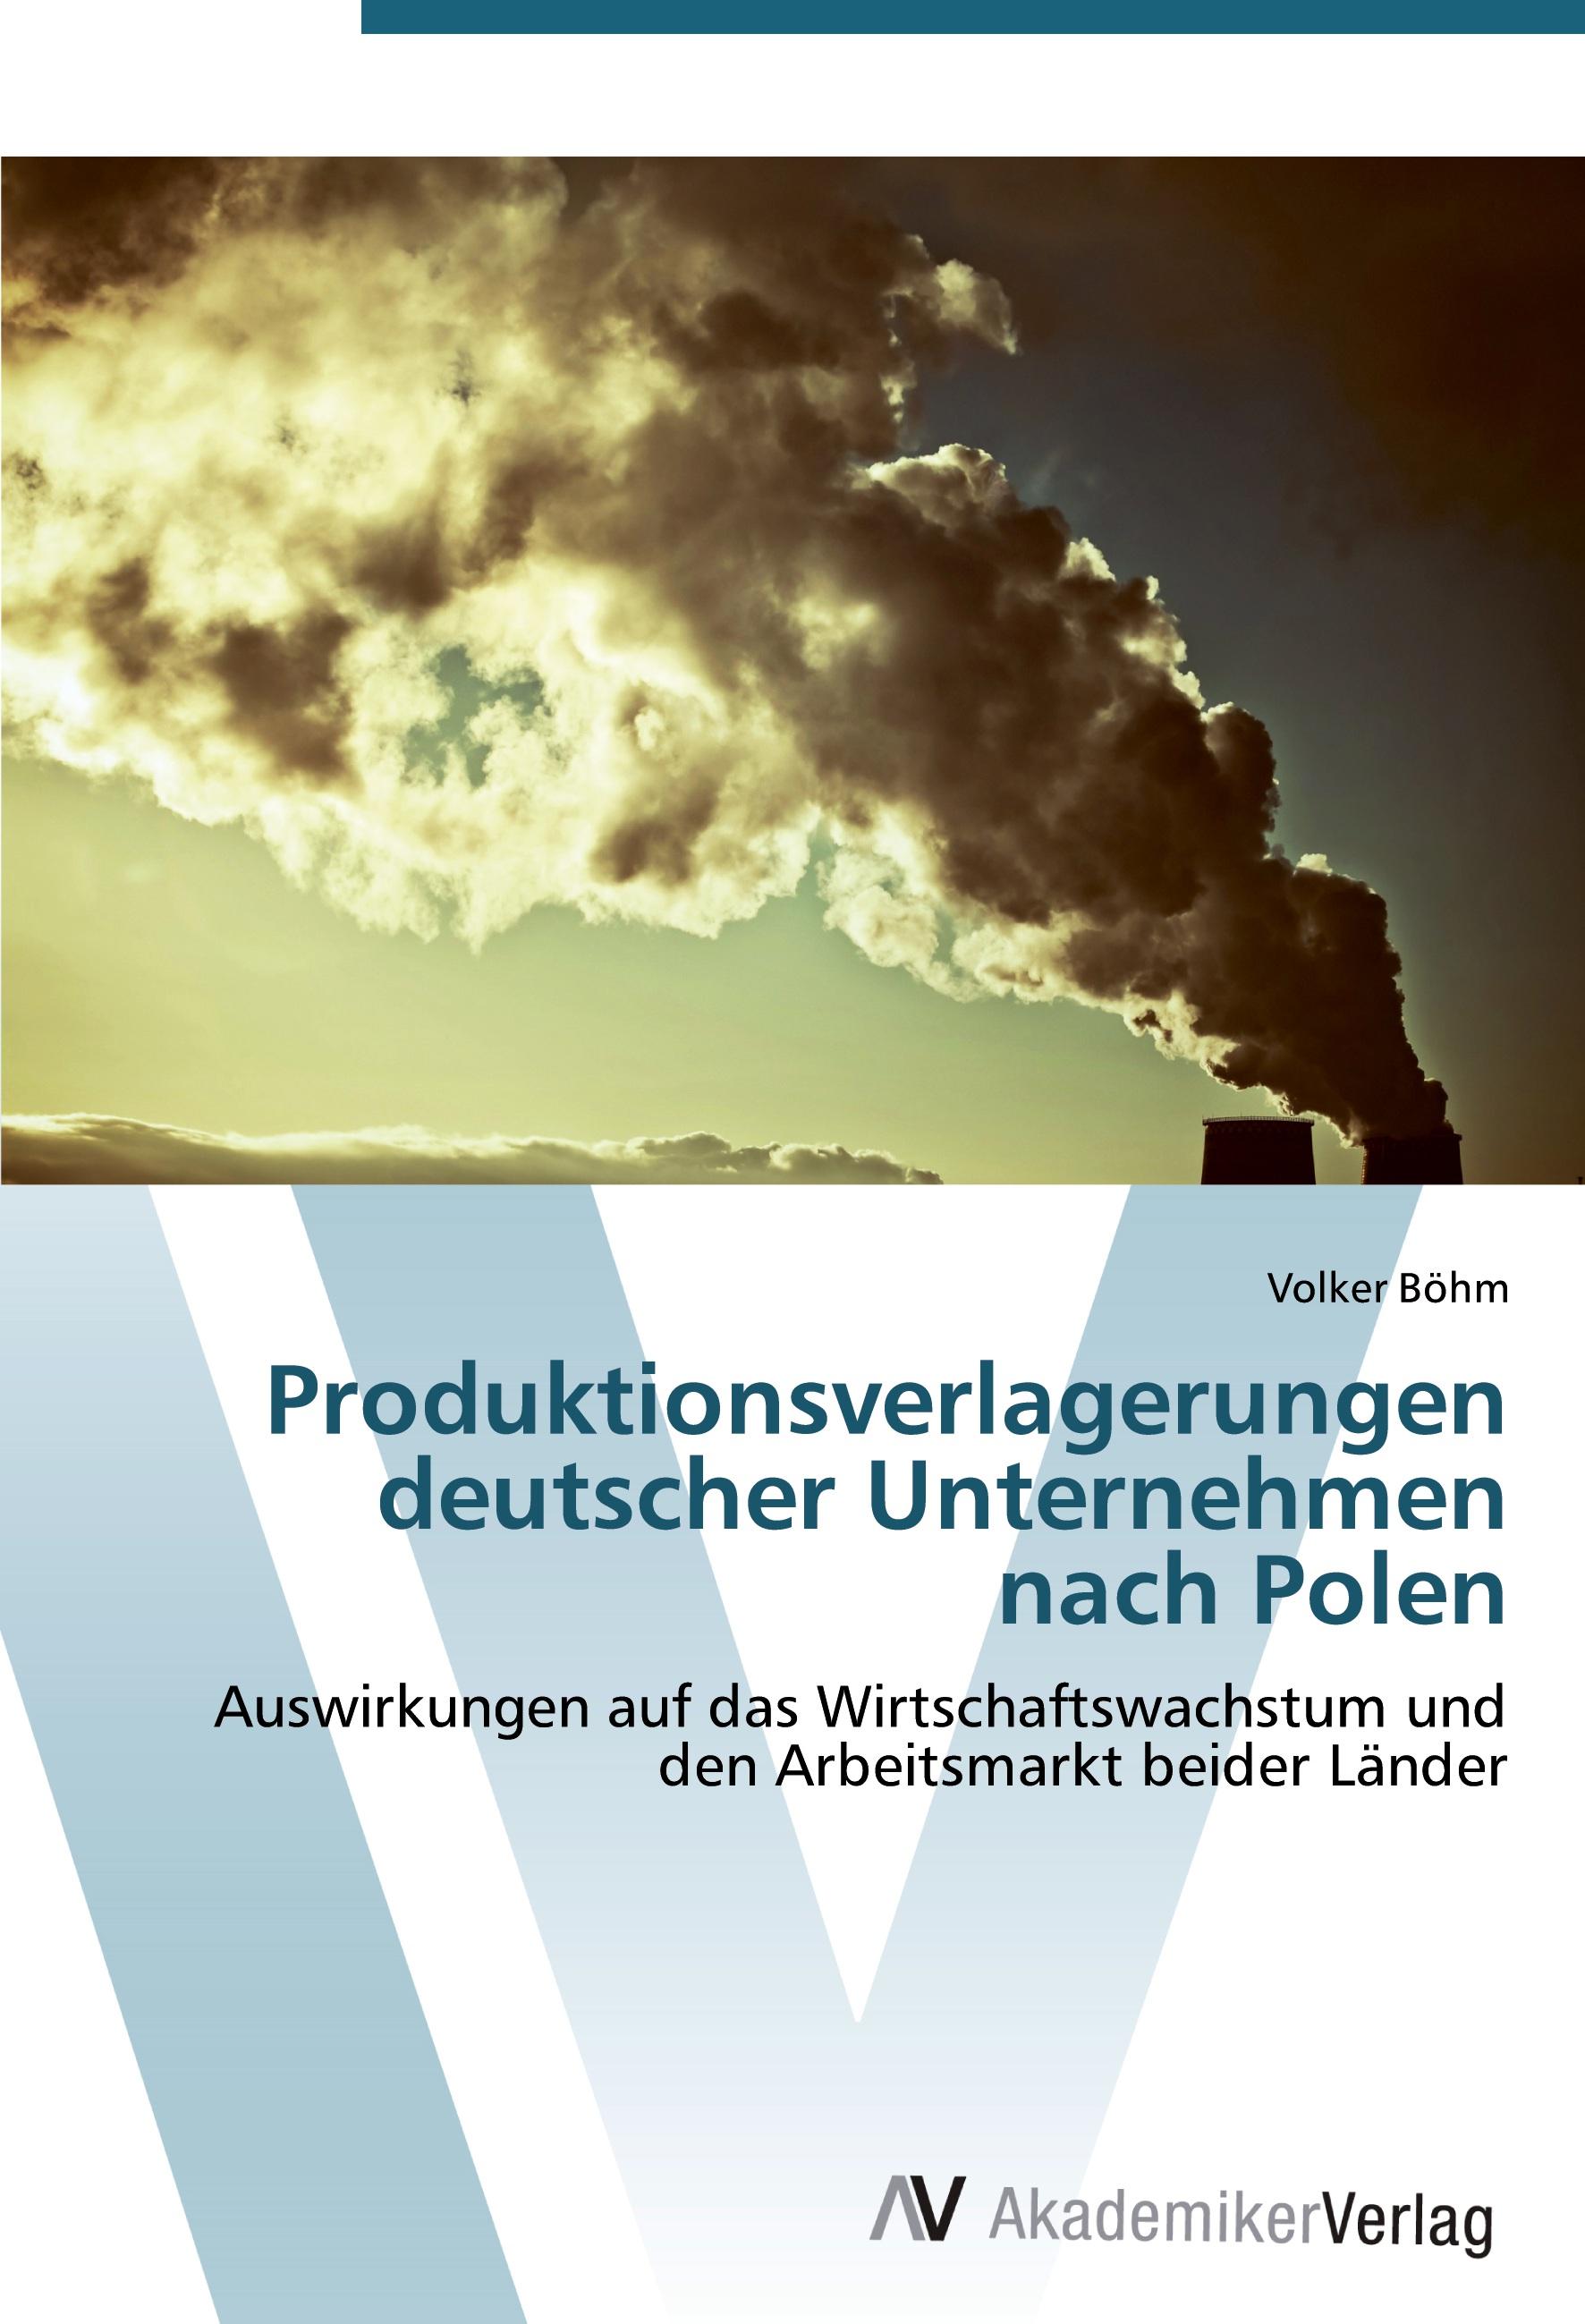 Produktionsverlagerungen deutscher Unternehmen nach Polen - Volker Boehm